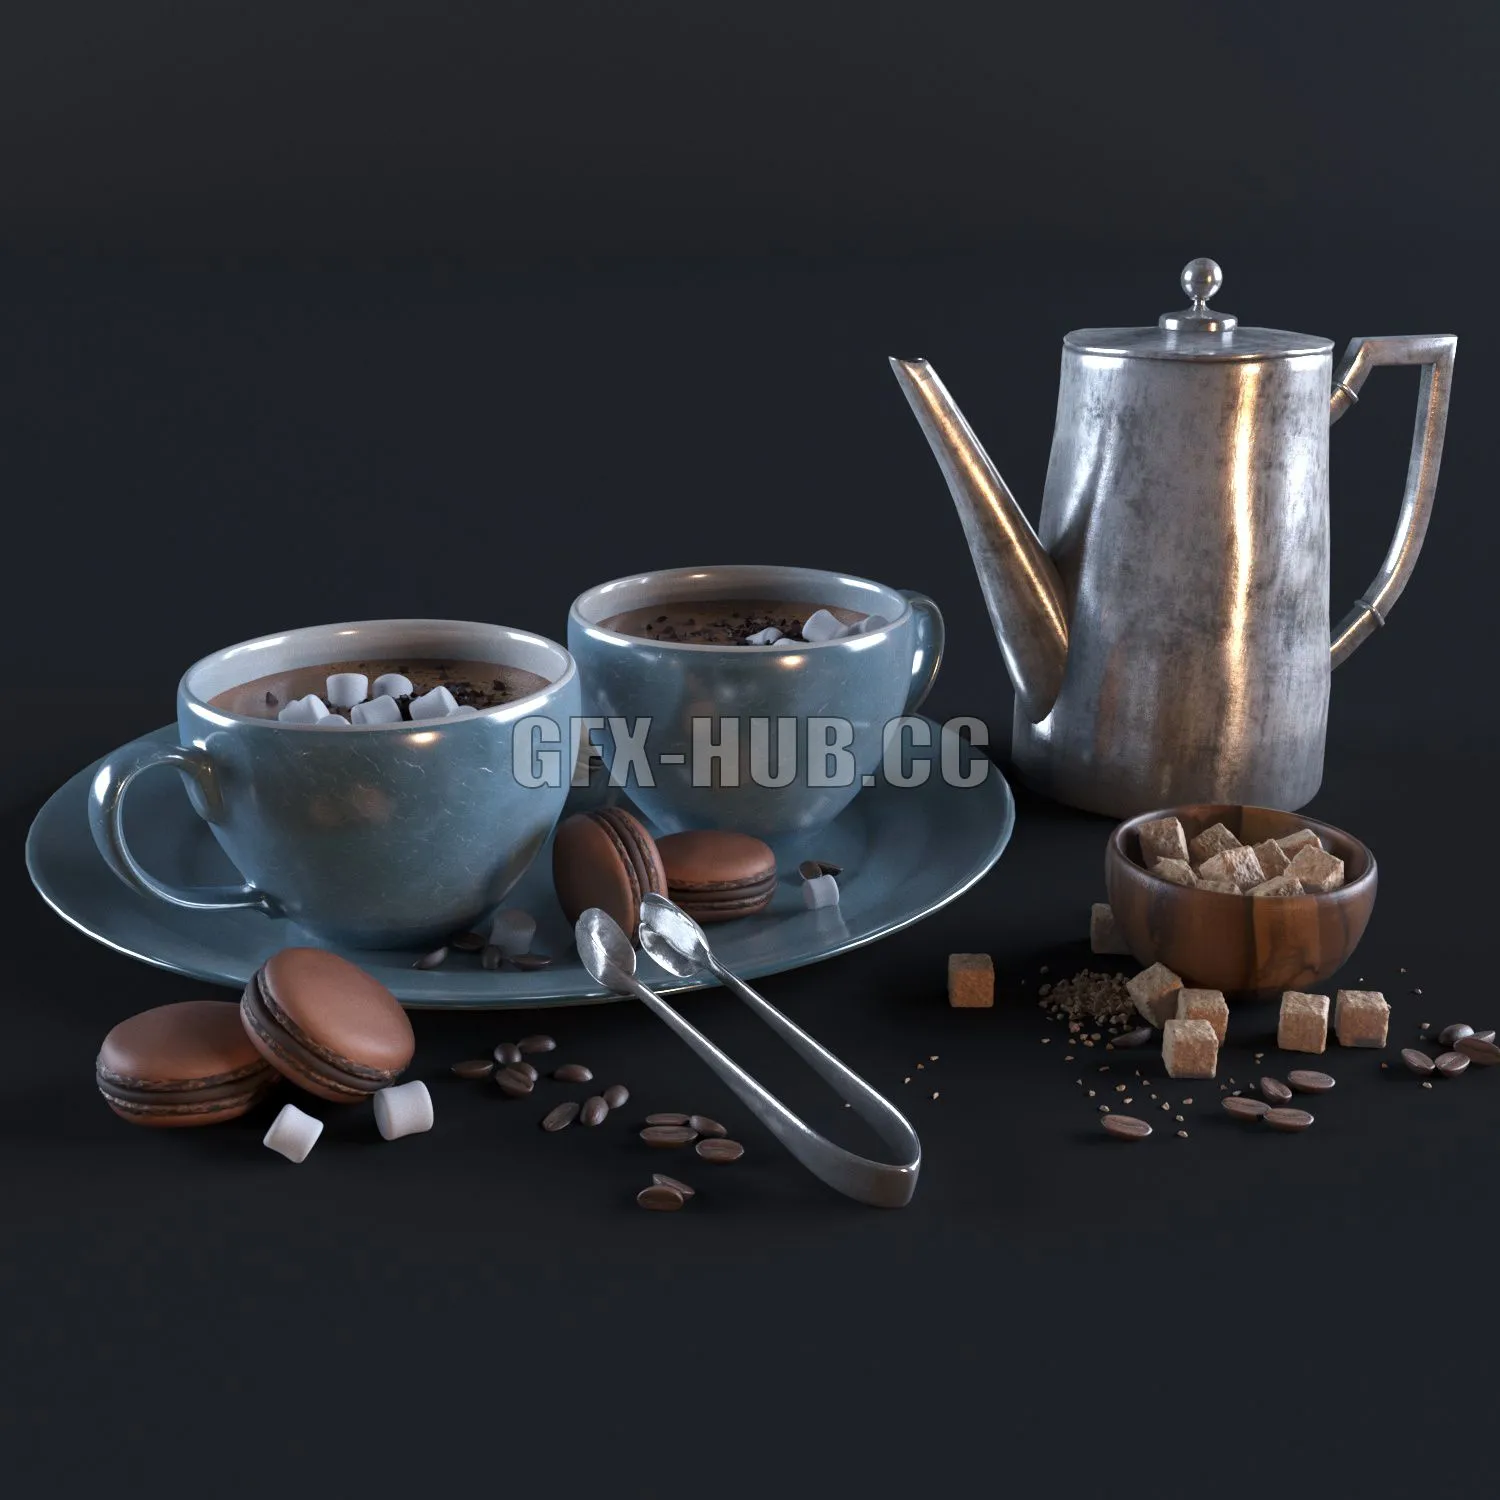 FURNITURE 3D MODELS – Hot chocolate